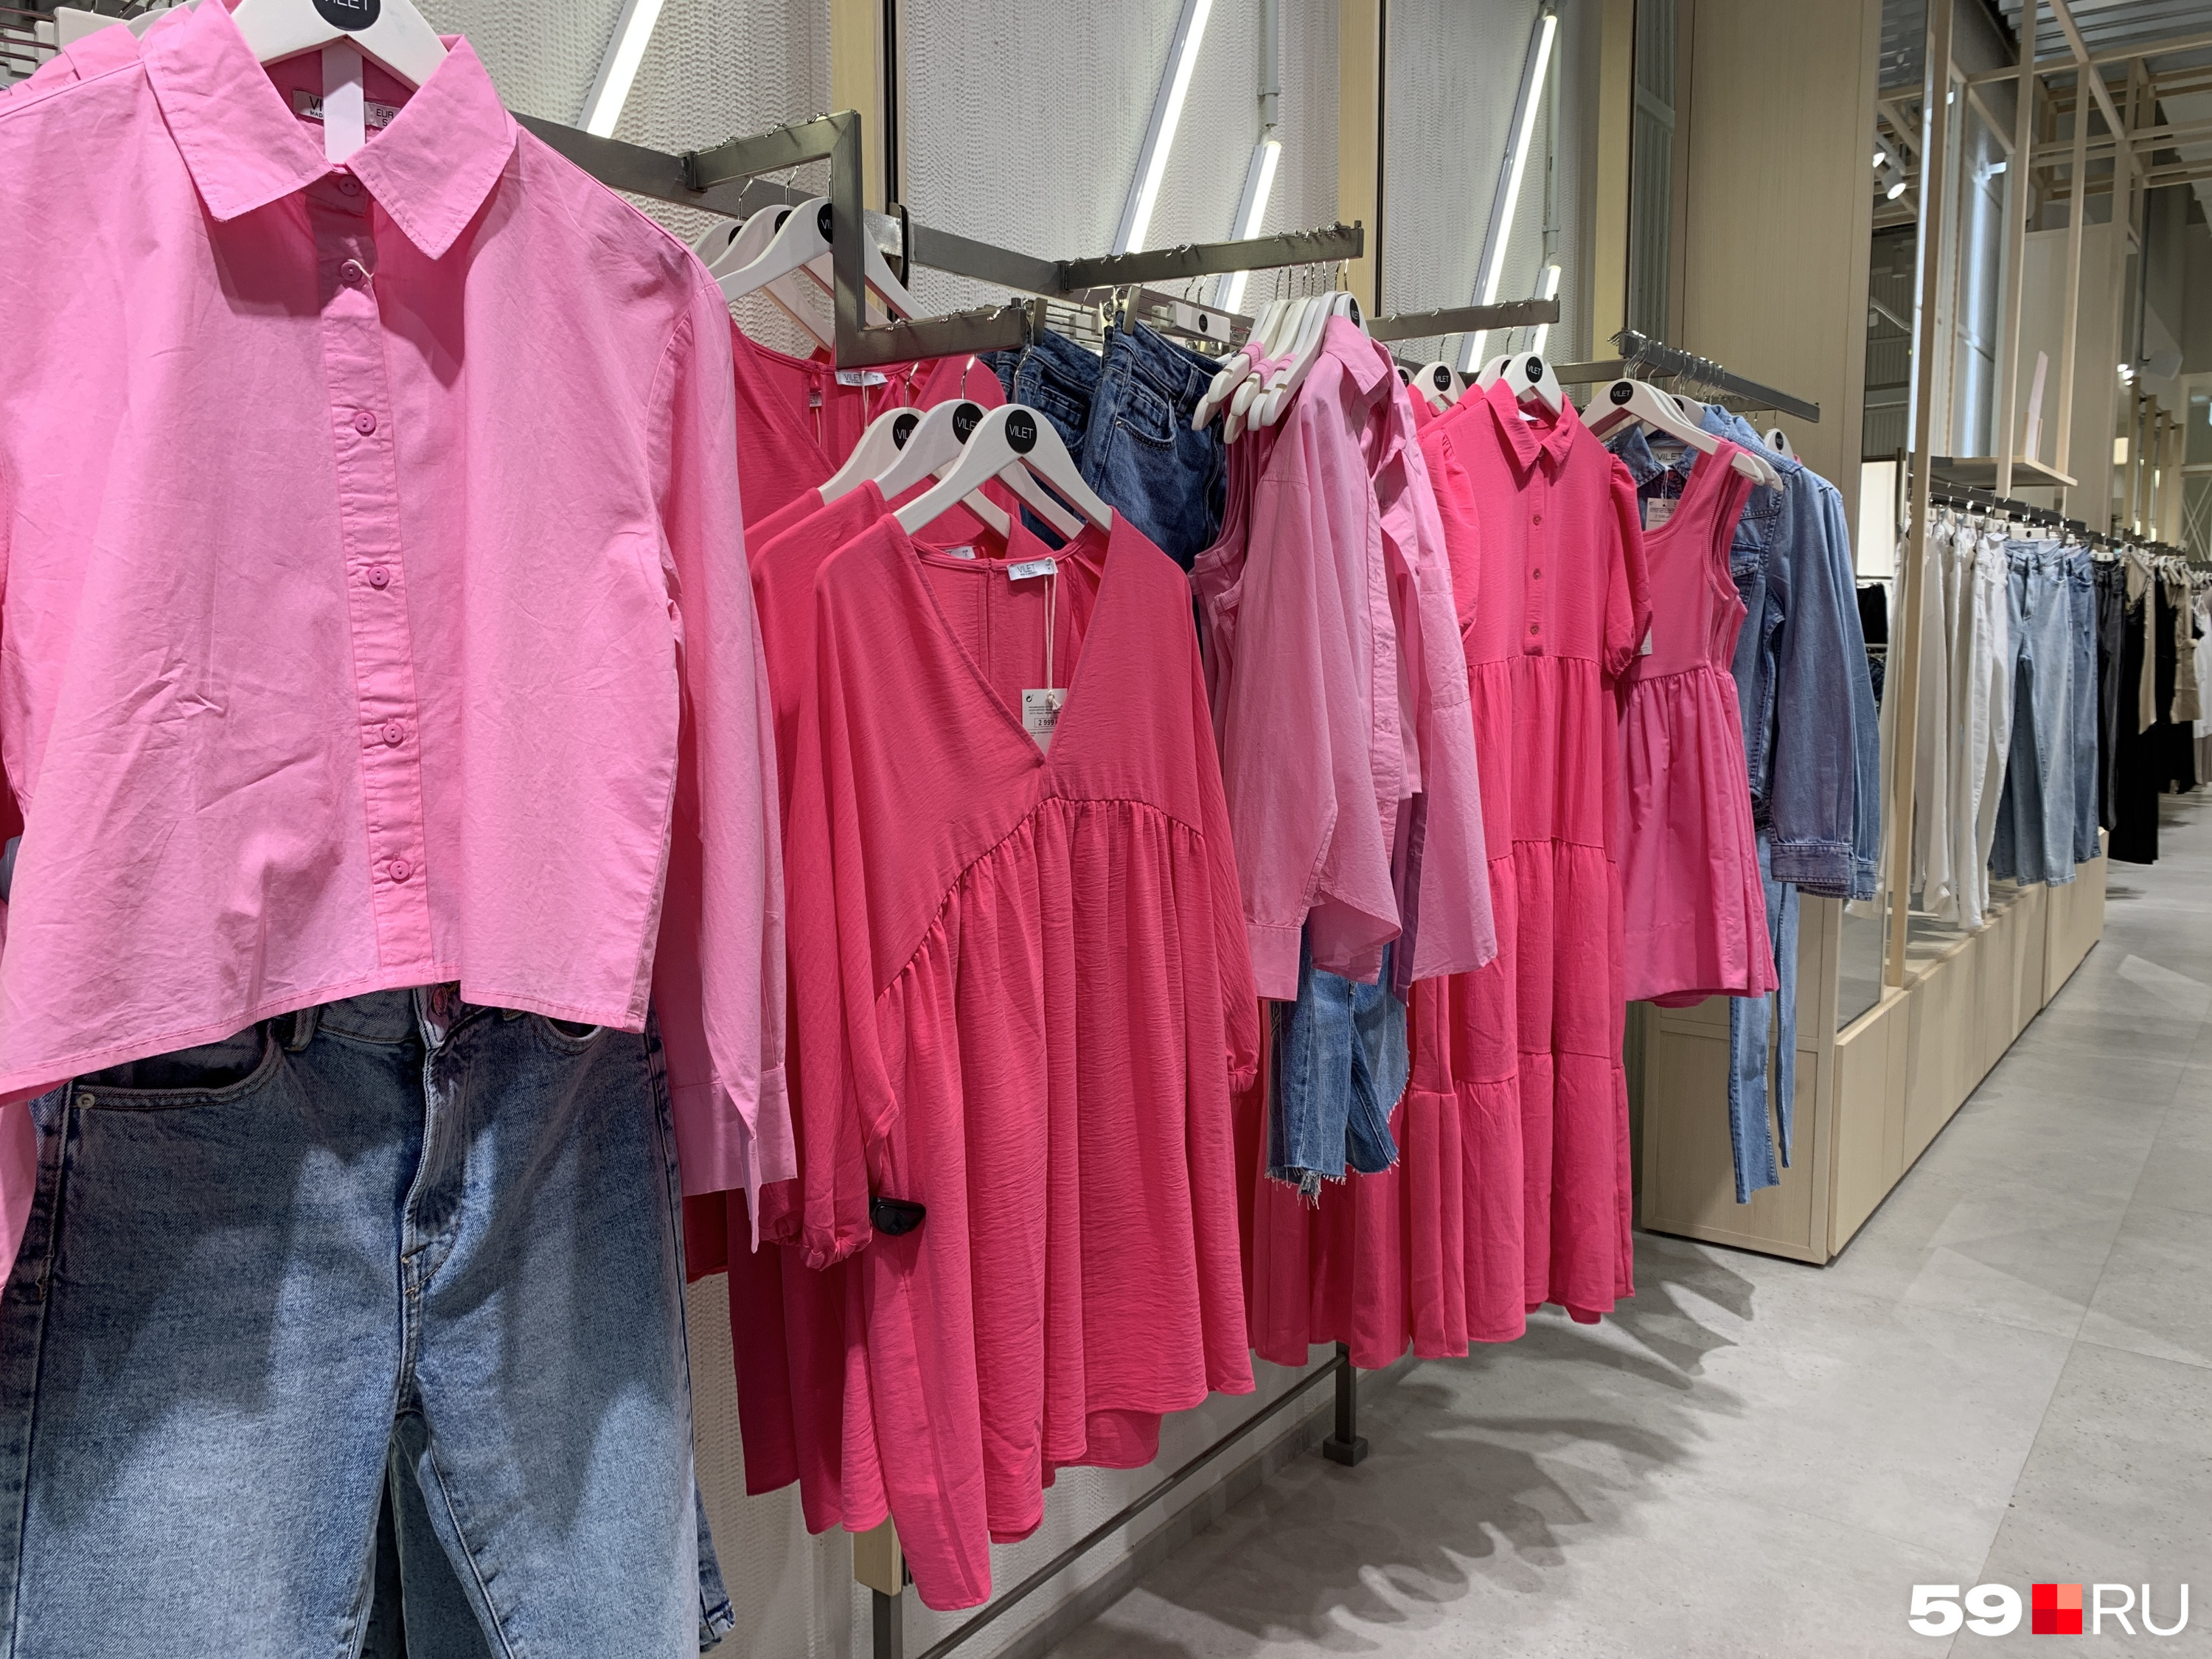 Рубашки есть в разных цветах по цене 1999 рублей, короткое платье — 2599 рублей